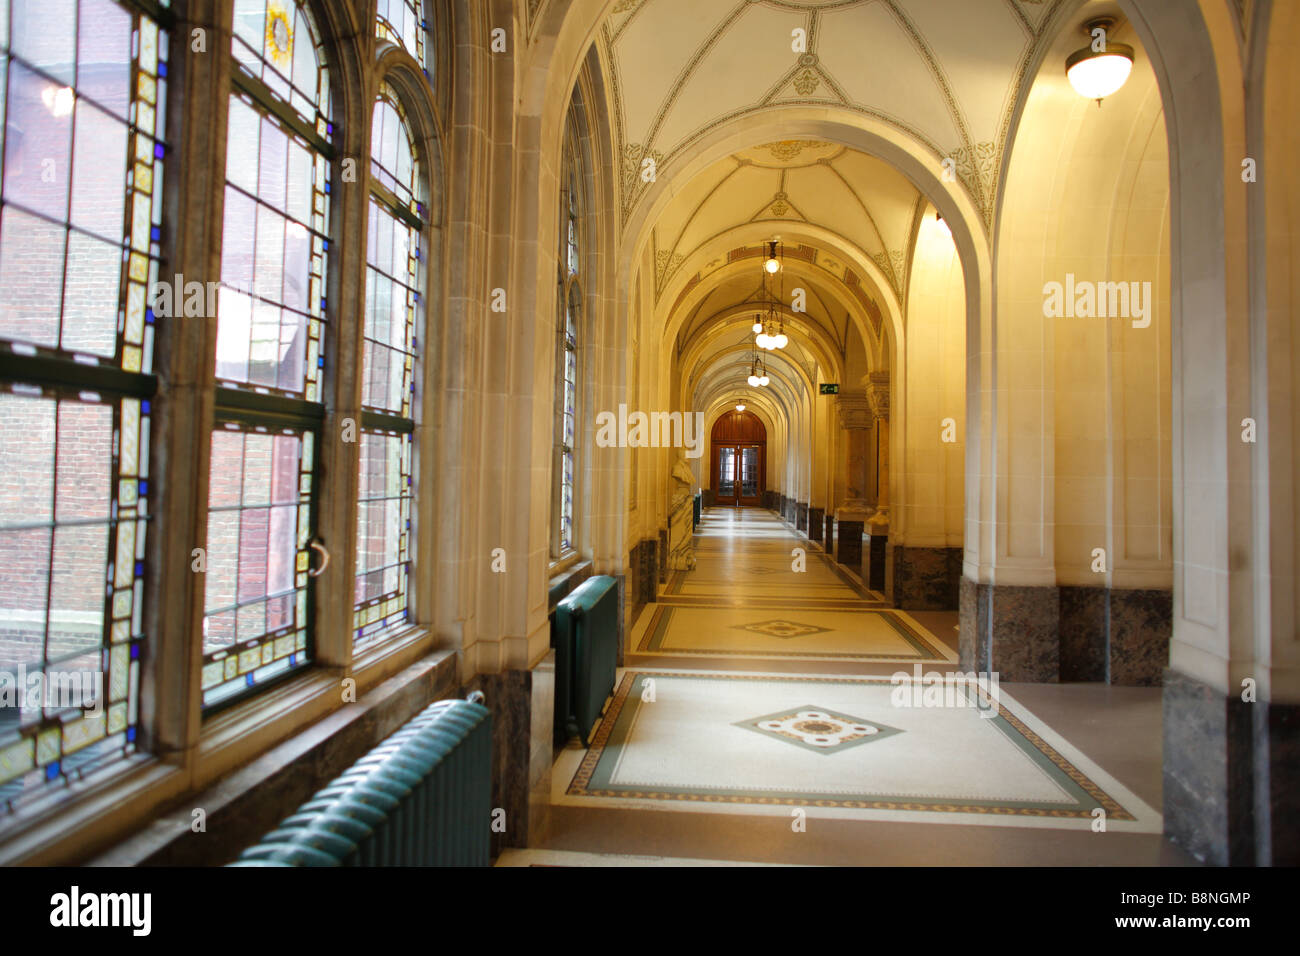 Innenraum der Friedenspalast, internationaler Gerichtshof, World Court, den Haag, Niederlande Stockfoto